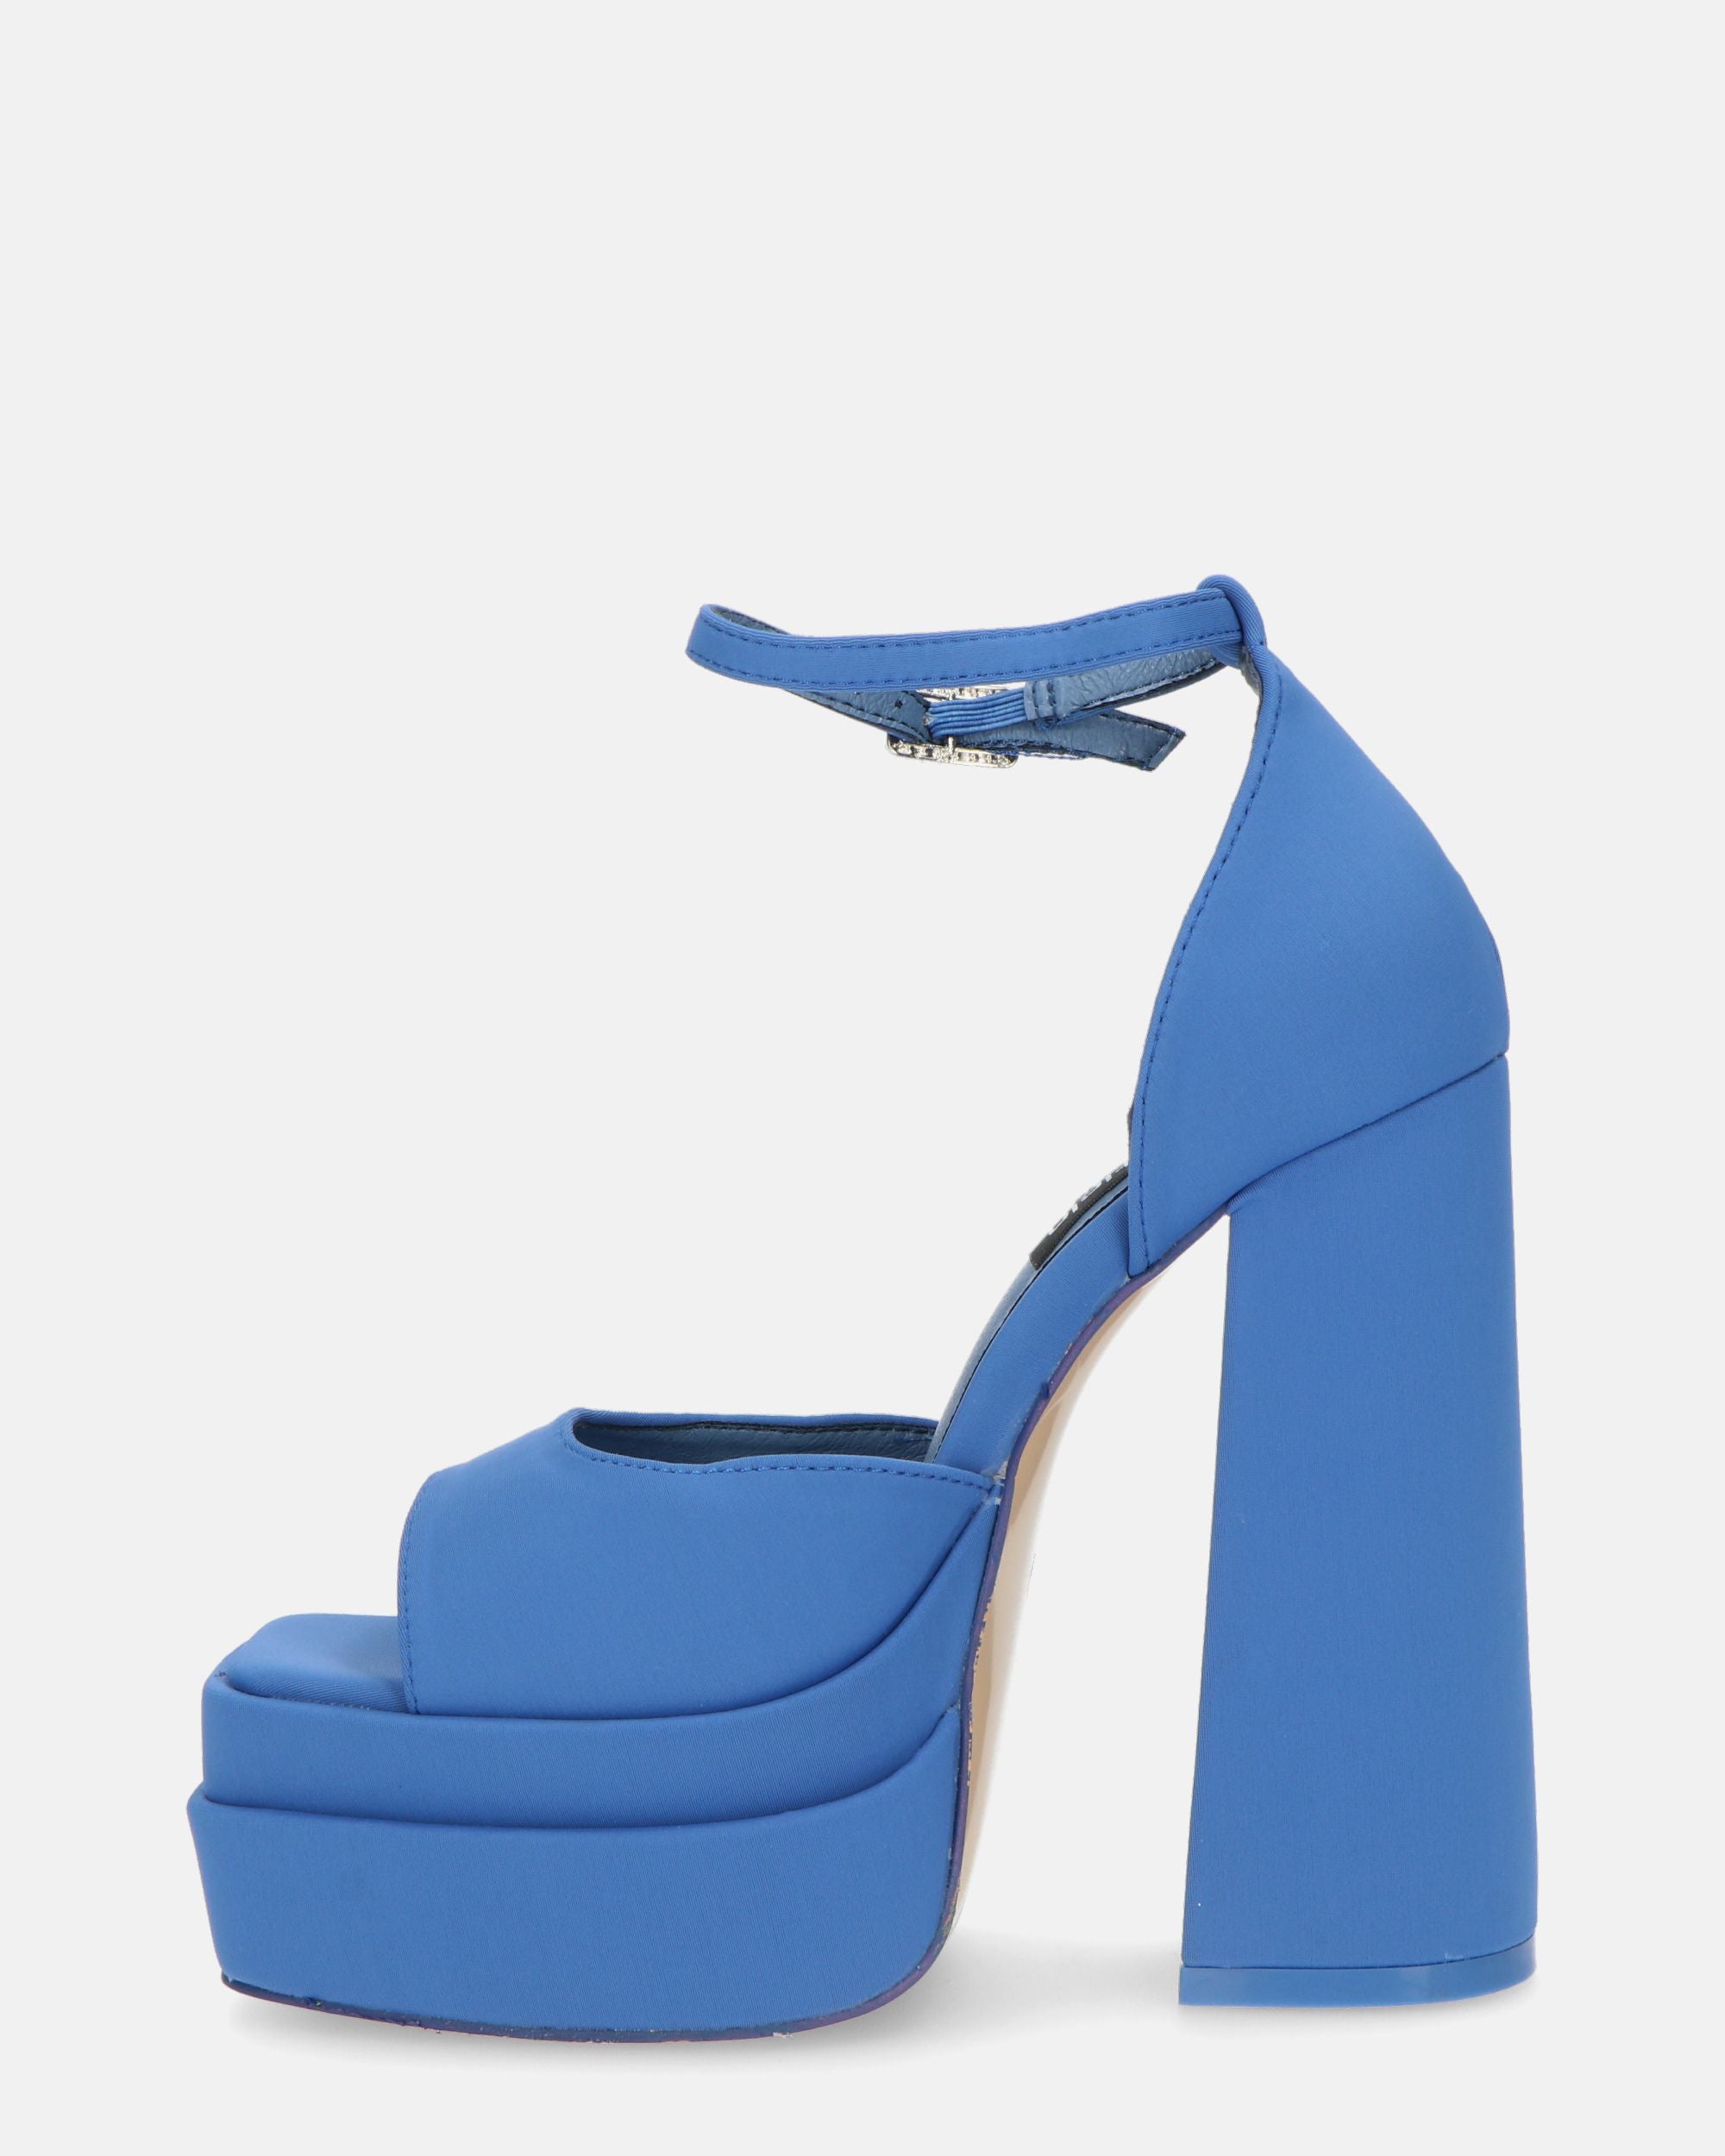 AVA - sandales à talons hauts en lycra bleu et pierres précieuses dans la bride